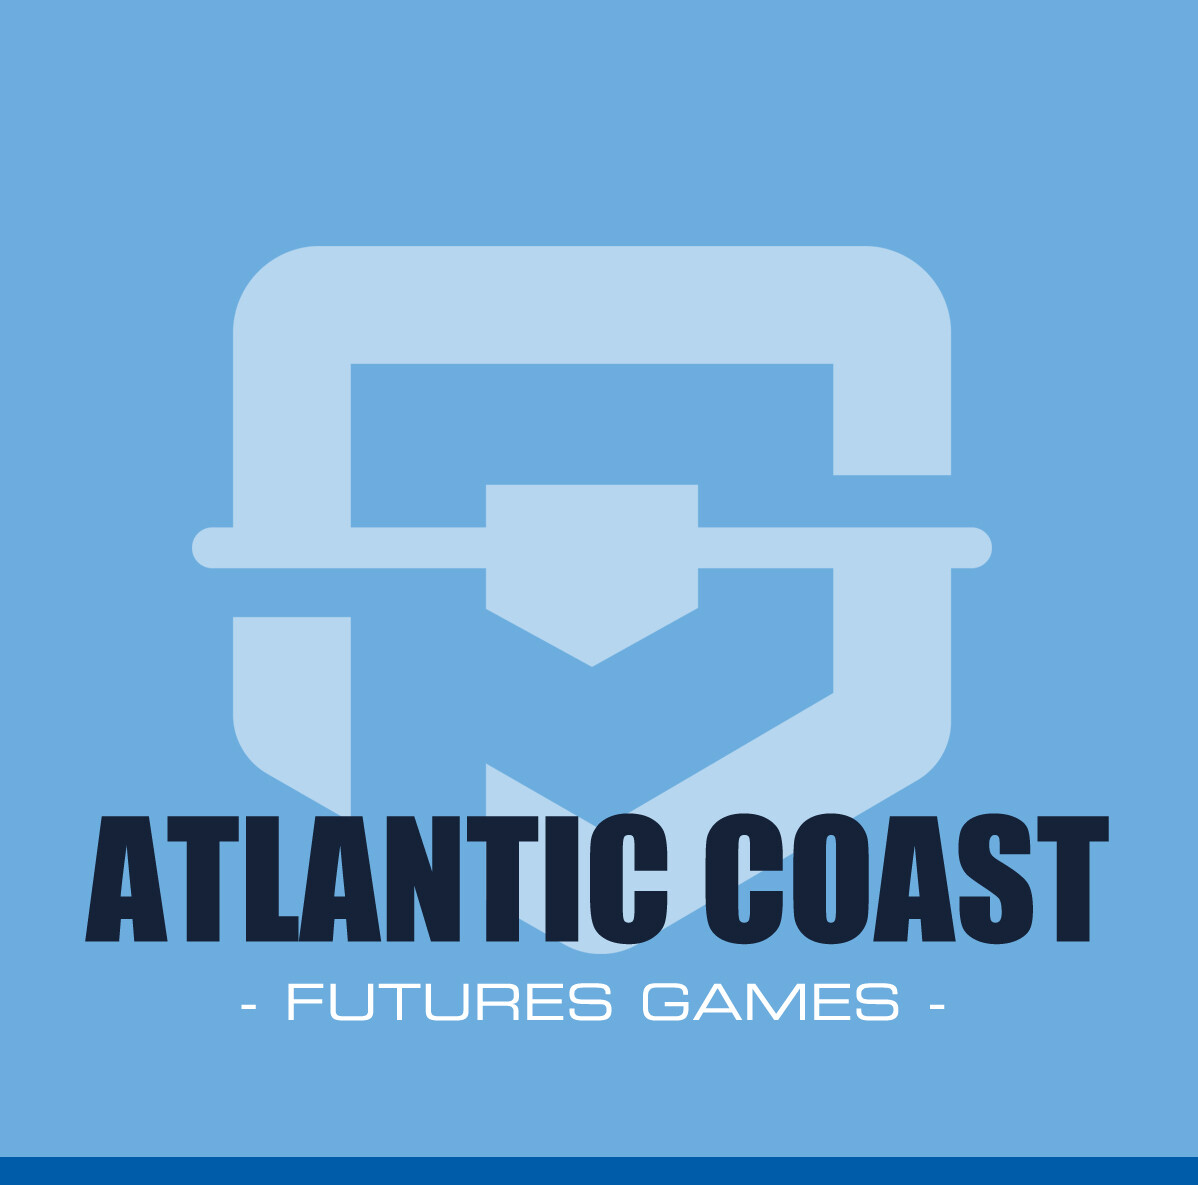 Atlantic Coast Futures Games